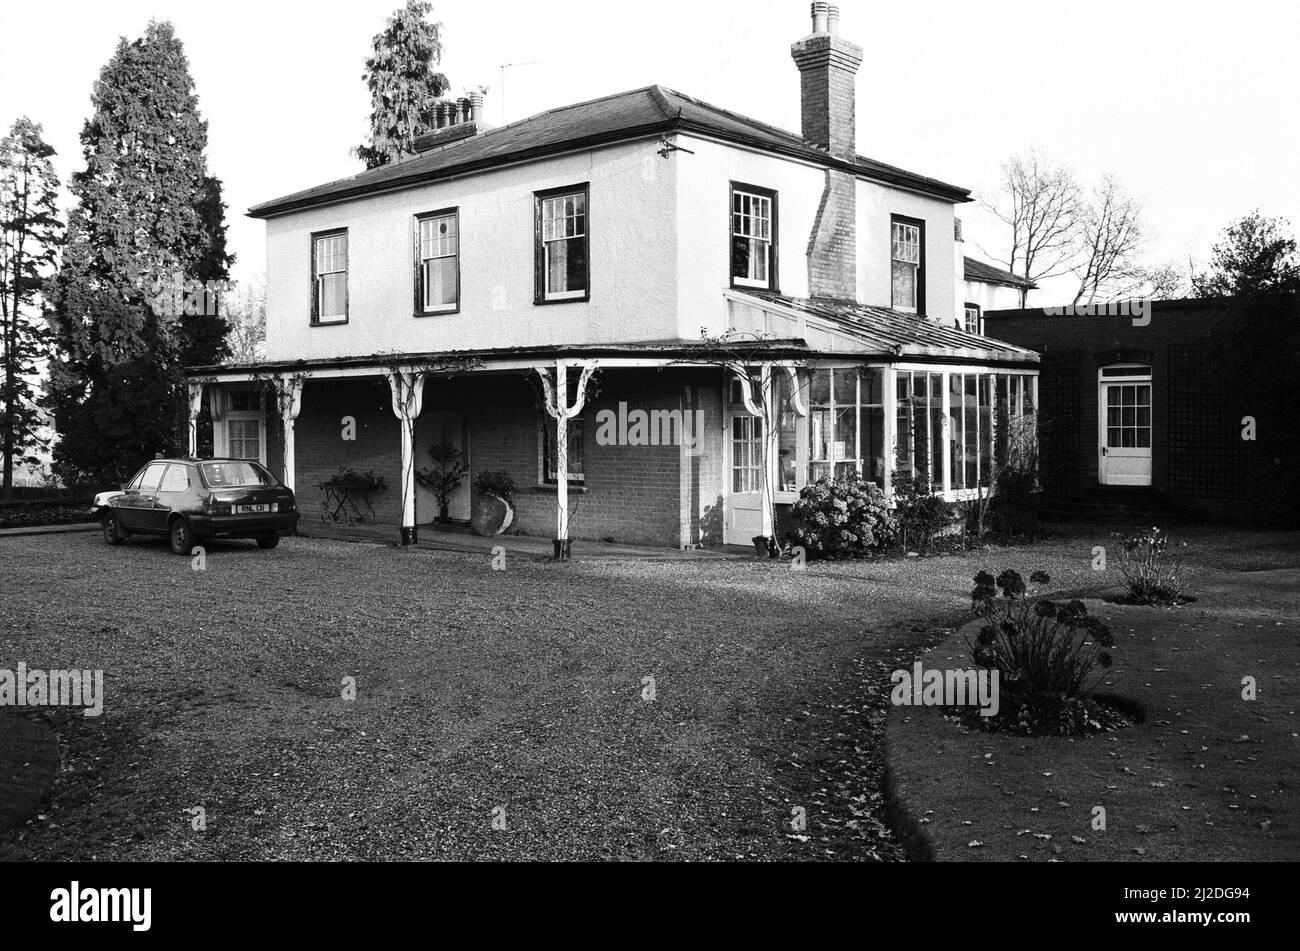 Der Rat von Enfield hat zugestimmt, dieses ratshaus, das Parkside House in Hadley Wood, im Rahmen des Kaufrechts der Regierung zu verkaufen. Es geht - für eine Viertel Million Pfund, abzüglich der üblichen £20.000 Rabatt - an einen ehemaligen GLC-Landagenten. 16.. Dezember 1986. Stockfoto